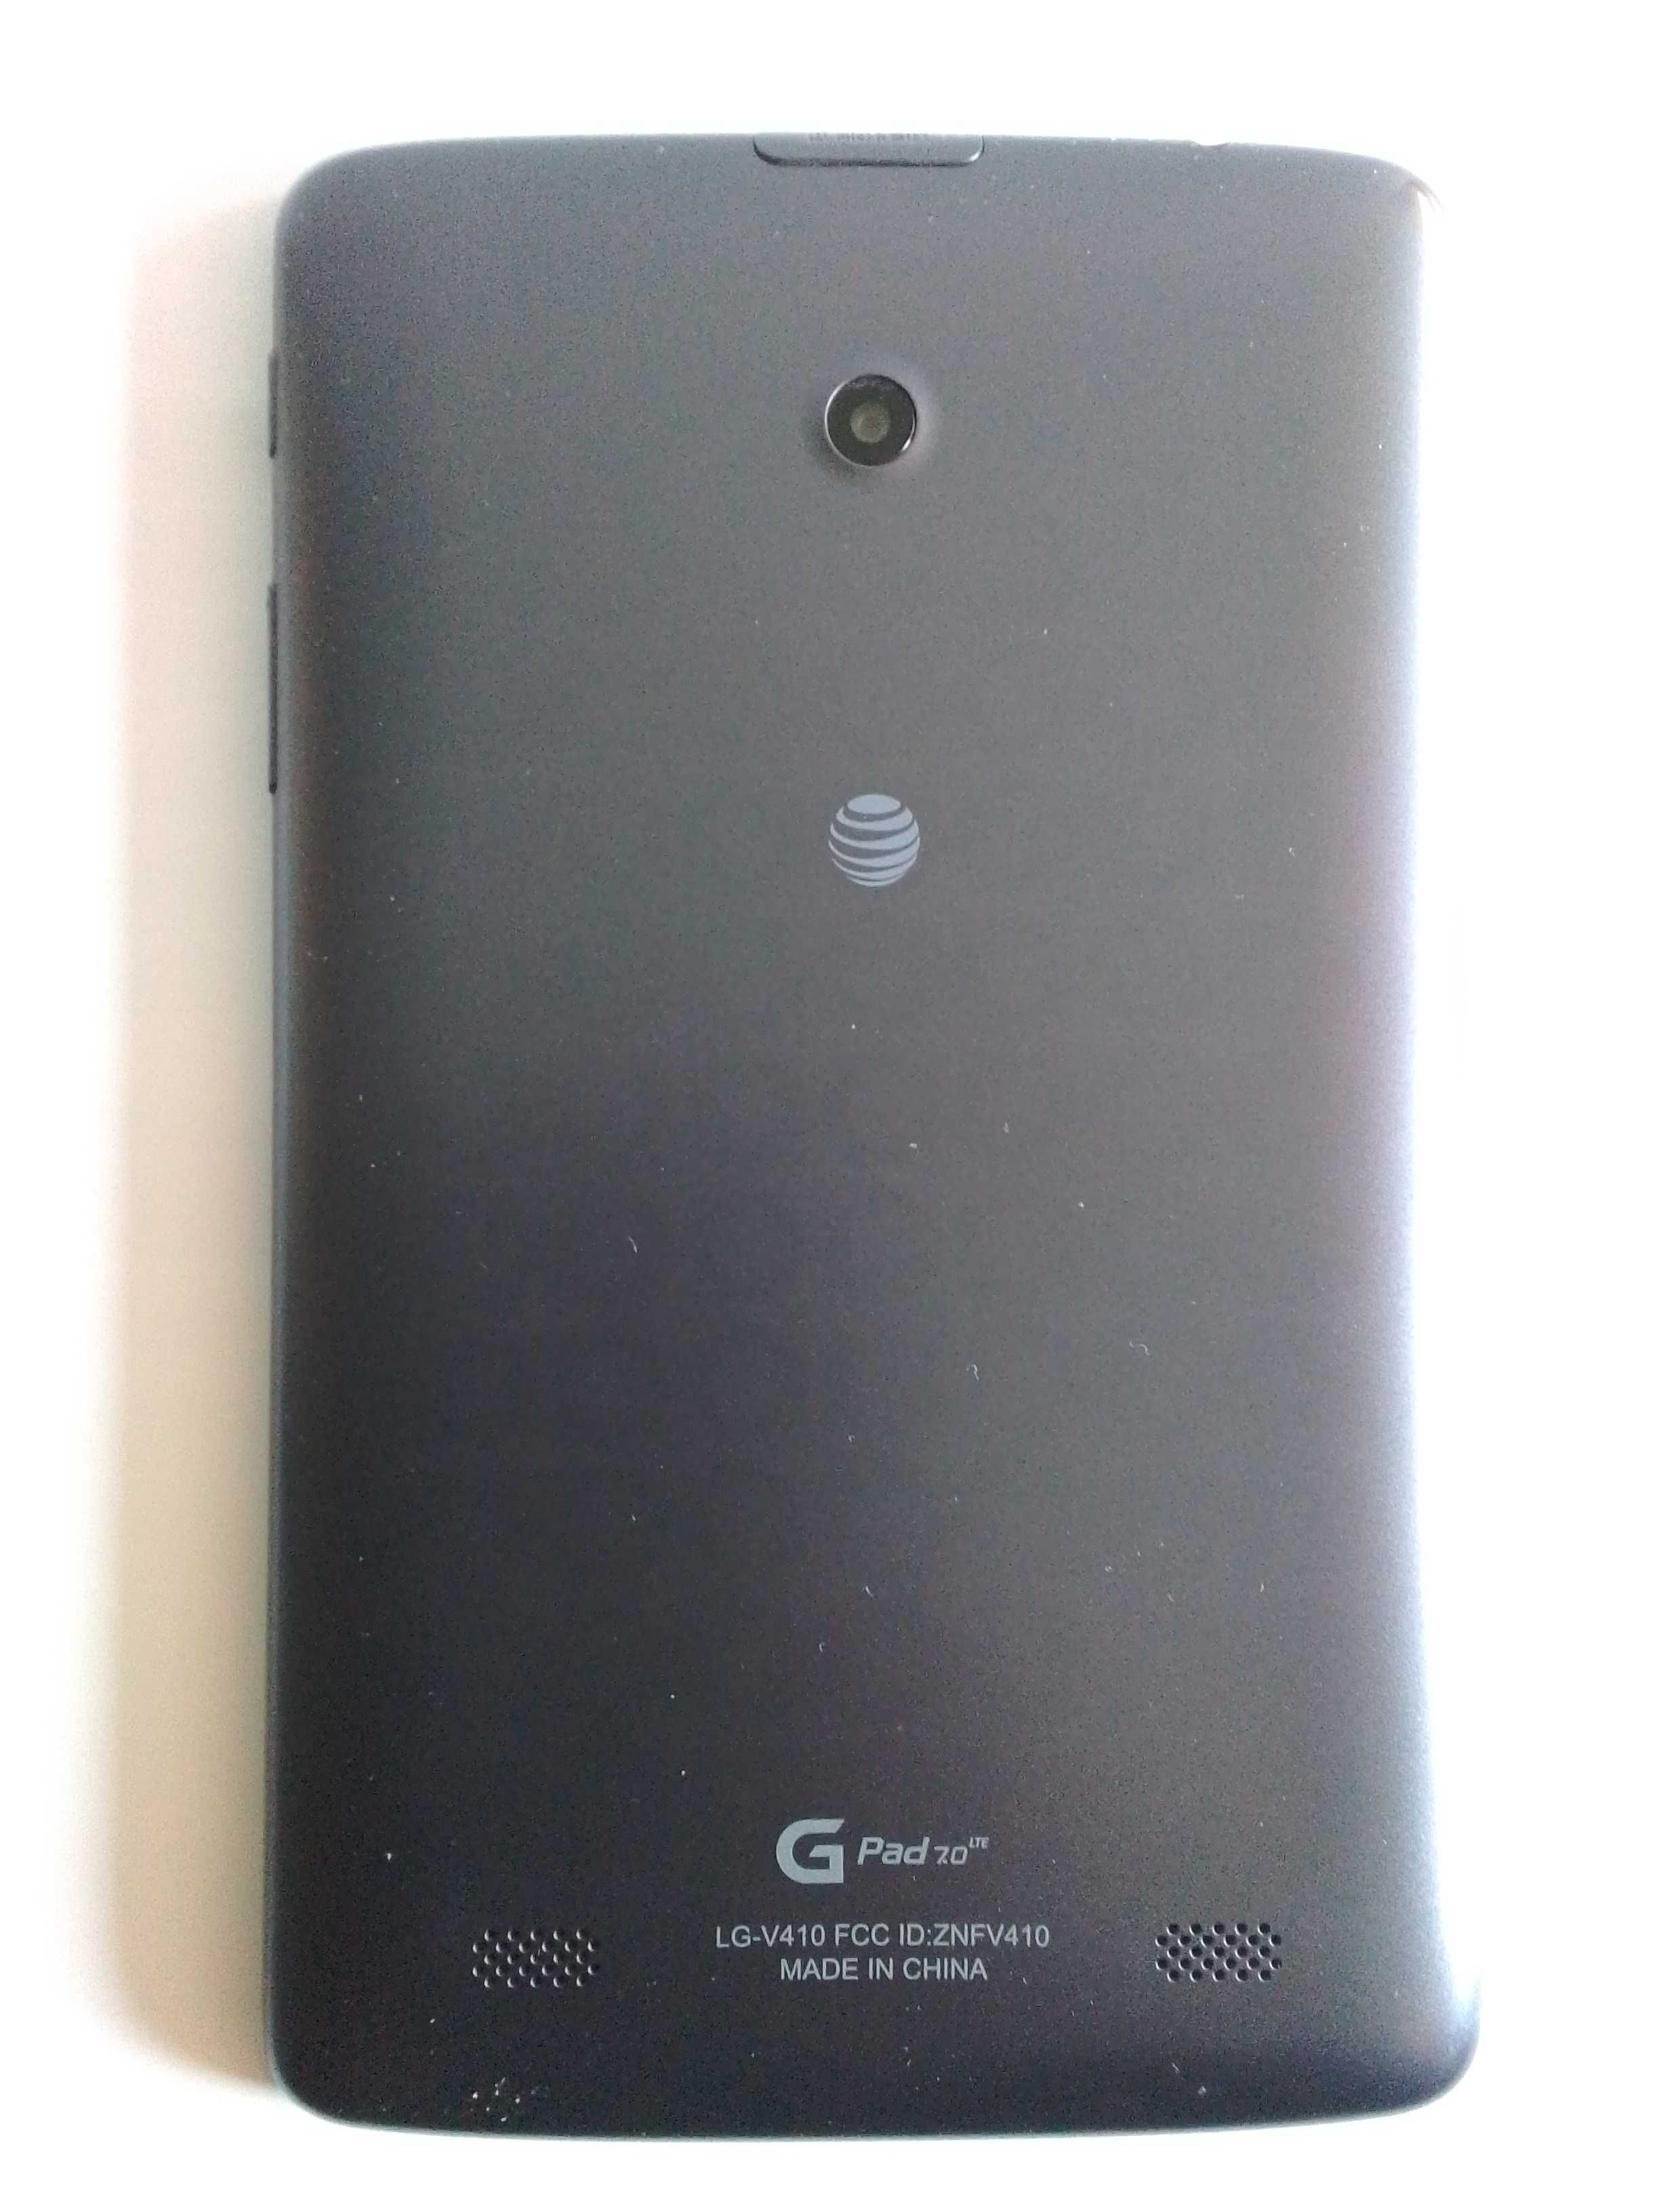 Планшет LG G pad 7 v410 в рабочем состоянии. Android 5, экран 7"